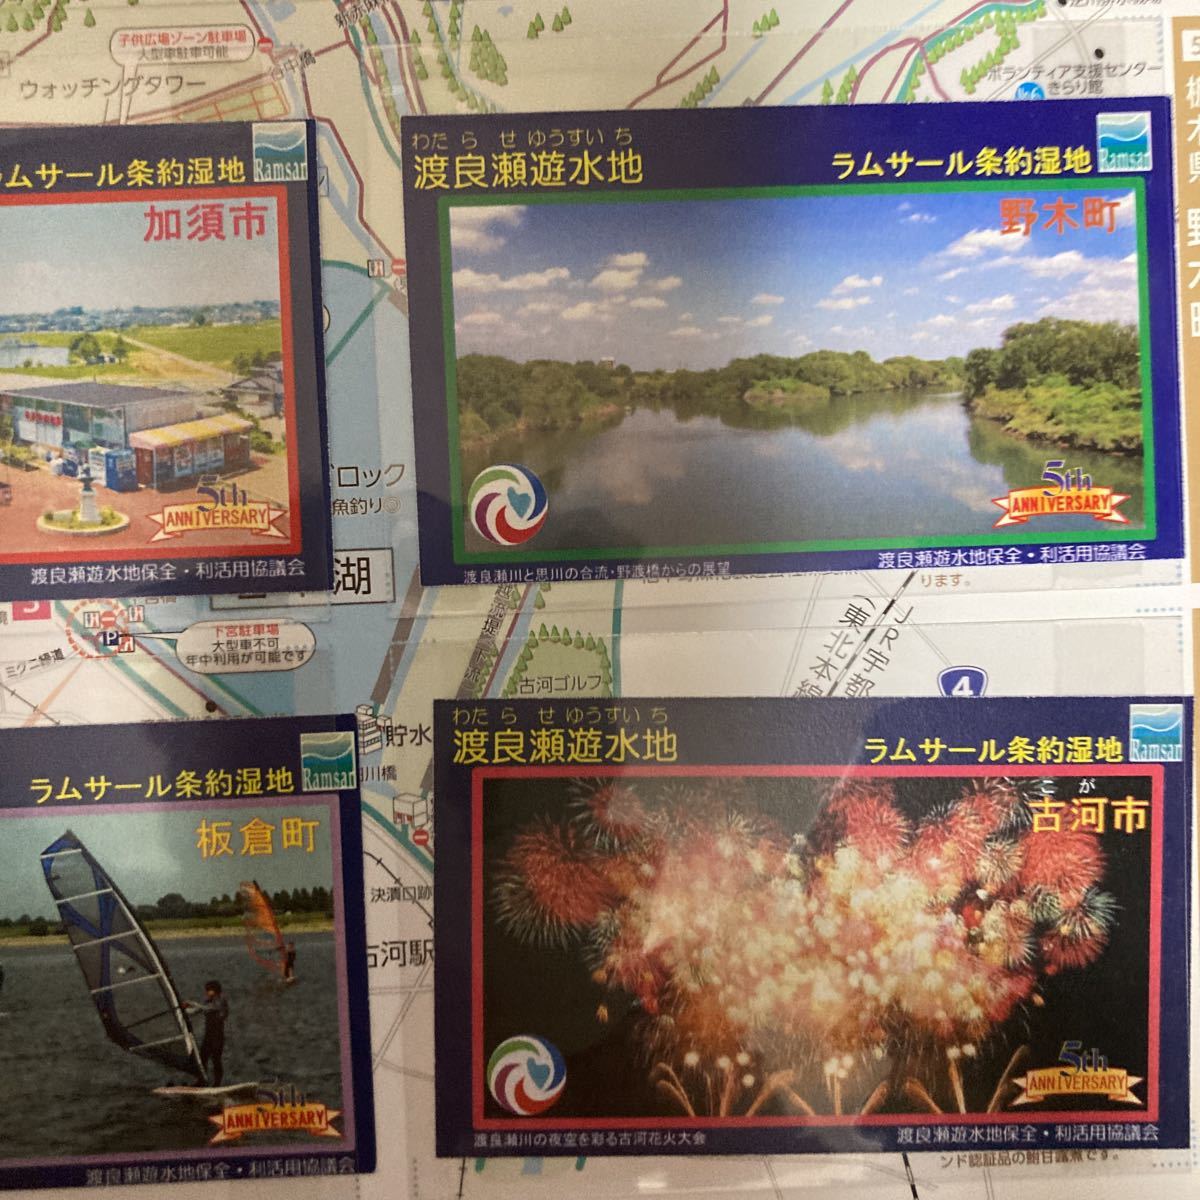 ダムカード 渡良瀬遊水地ラムサール条約湿地登録5周年記念セット8枚_画像6